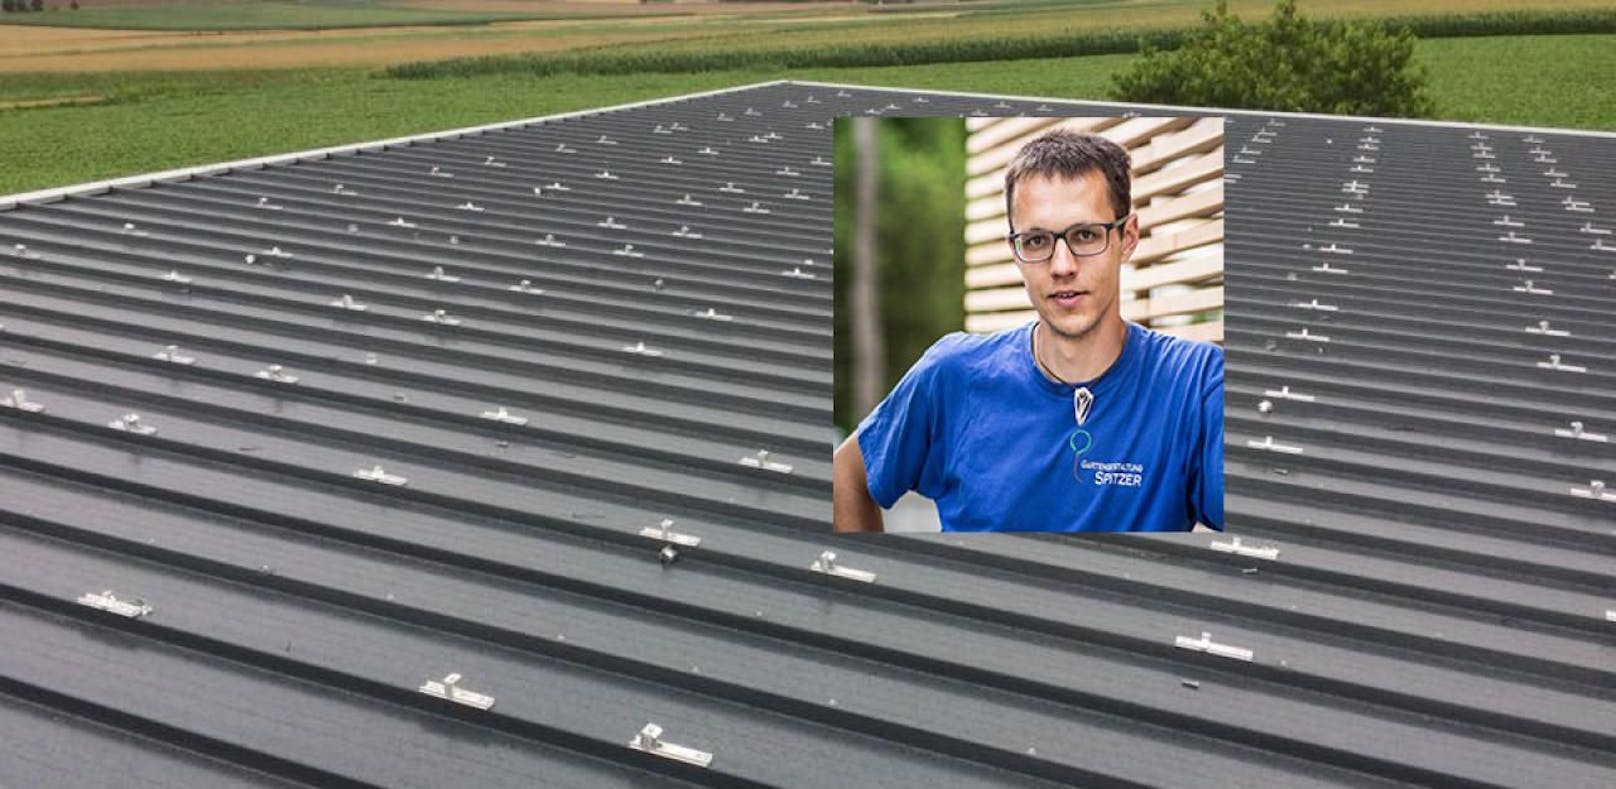 Firmenchef Thomas Spitzer; Photovoltaik-Anlage wurde von Dach gestohlen